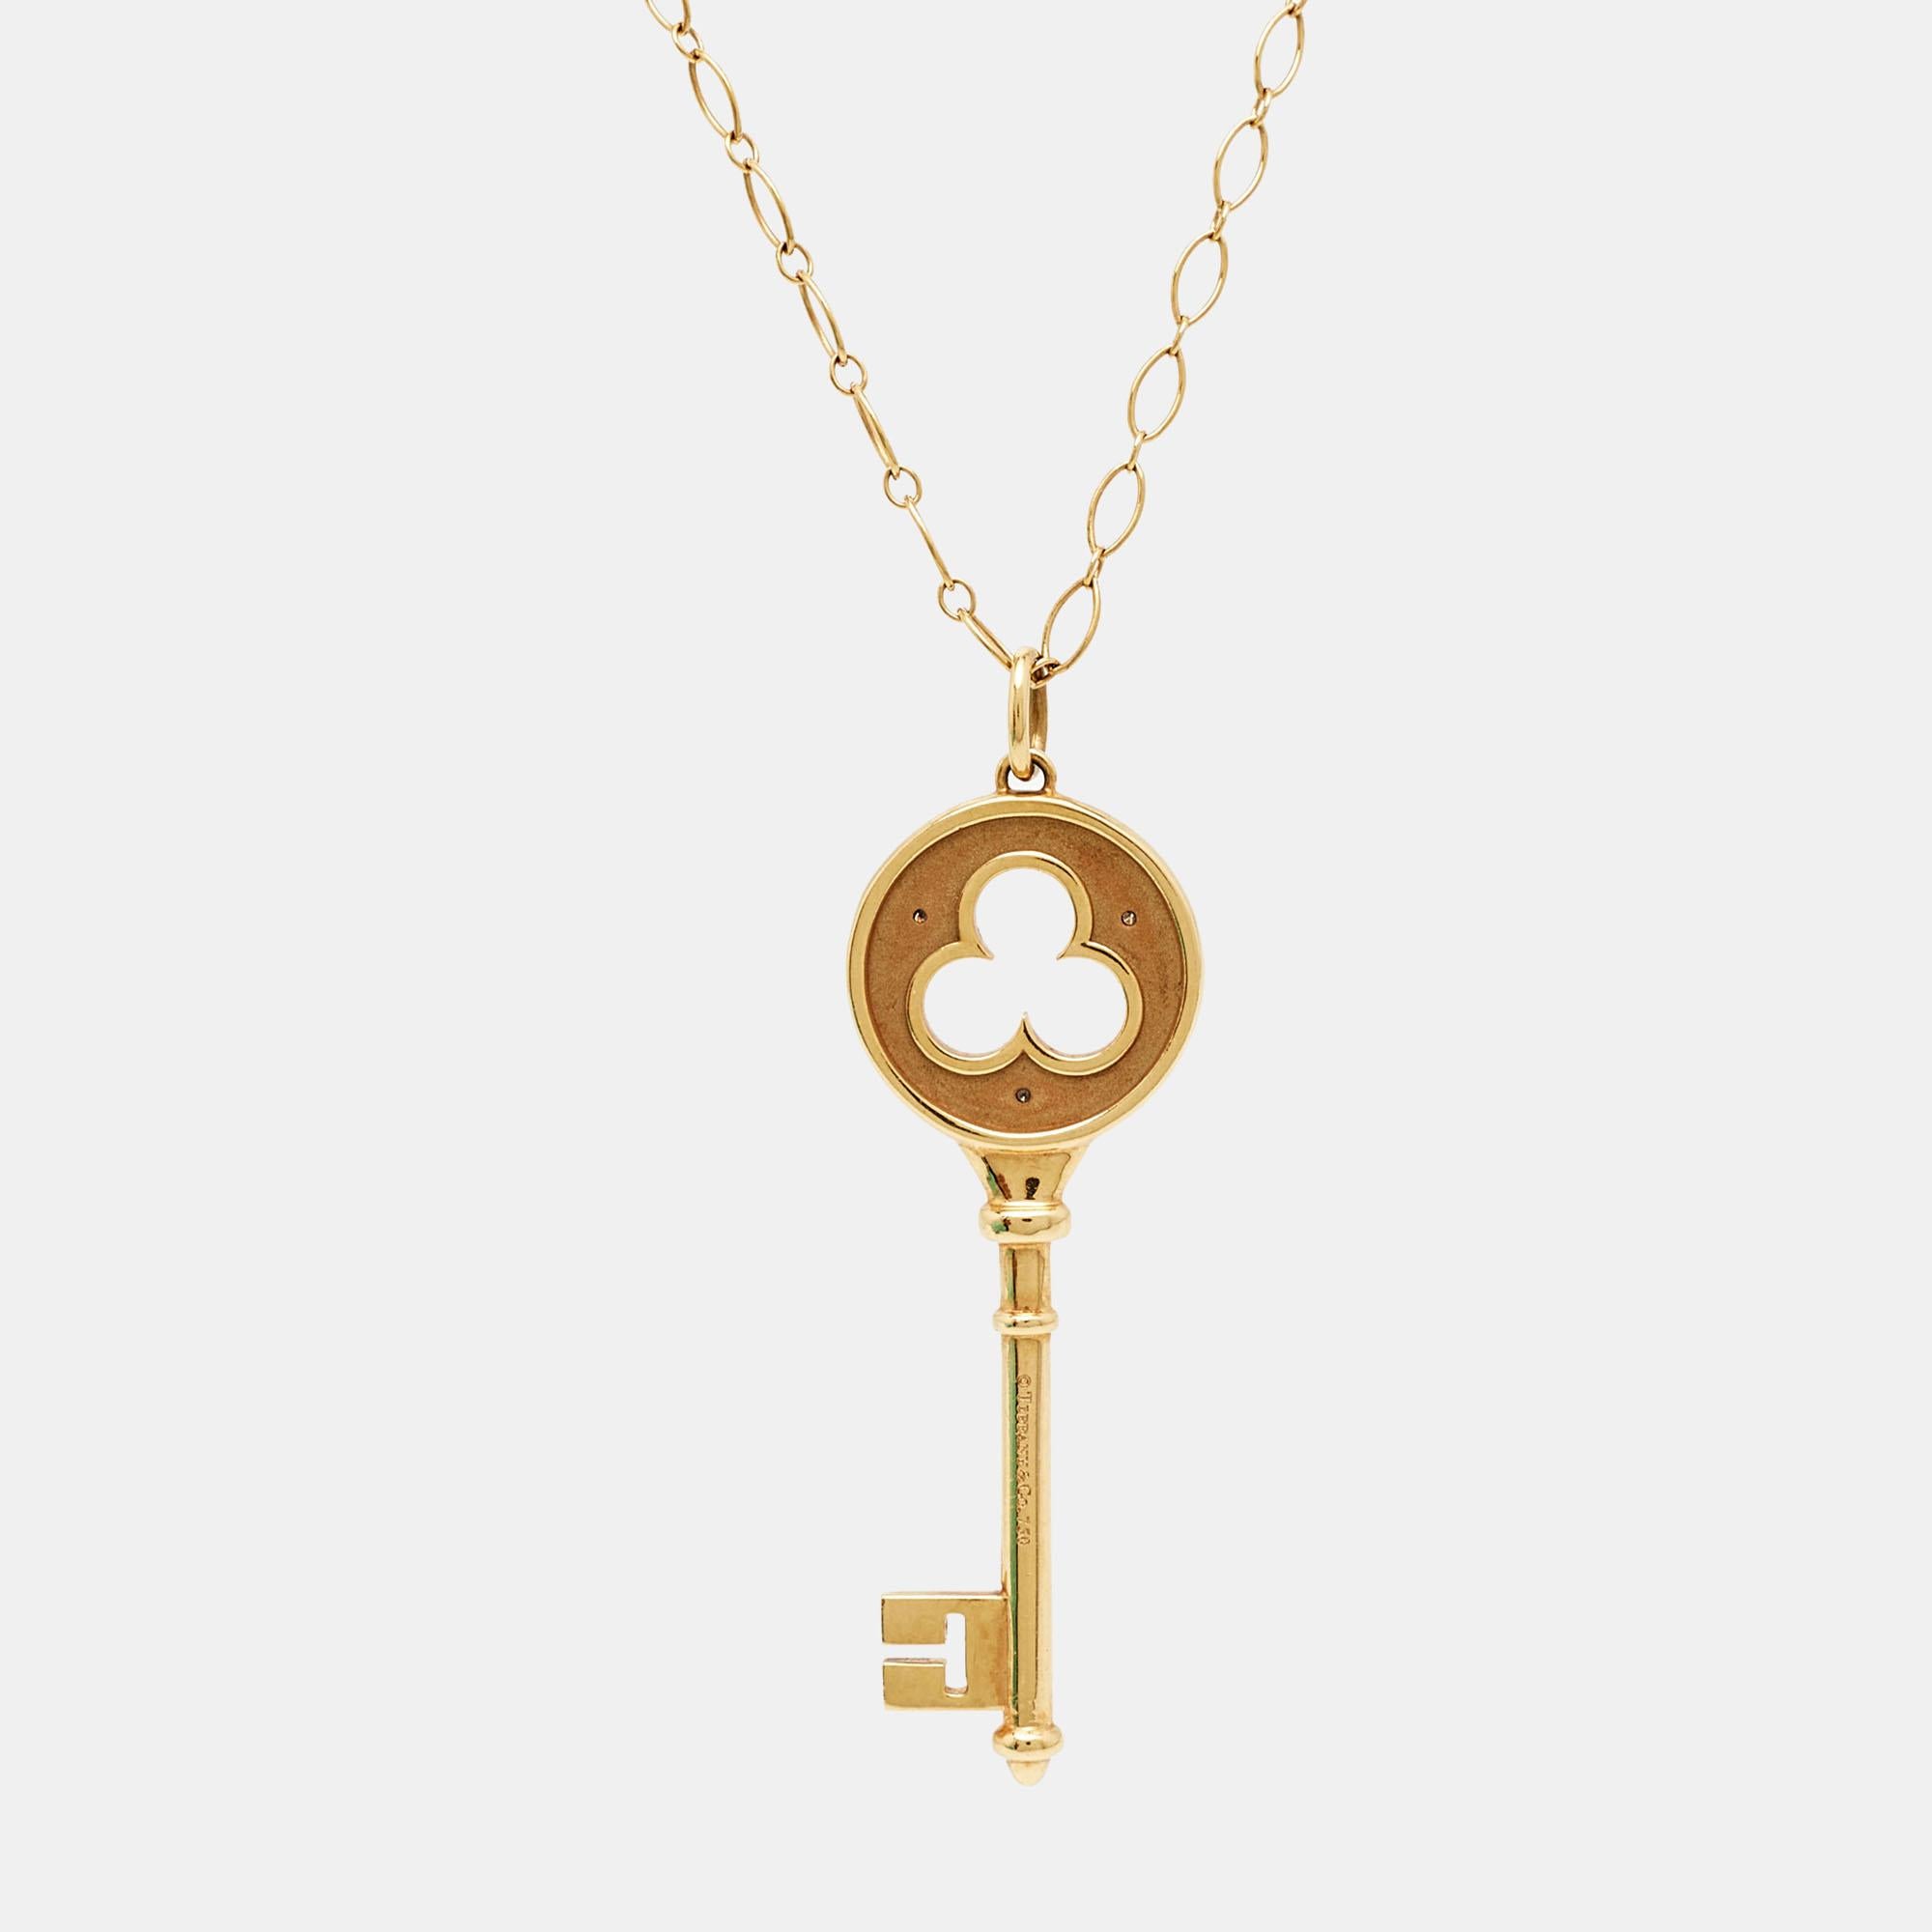 Tiffany & Co. steht für exzellente Handwerkskunst und exquisite Kreativität, wenn es um Schmuck geht, und diese wunderschöne Key-Halskette aus 18-karätigem Gold ist ein schöner Beweis dafür. Der Anhänger hat die Form eines Schlüssels und ist mit